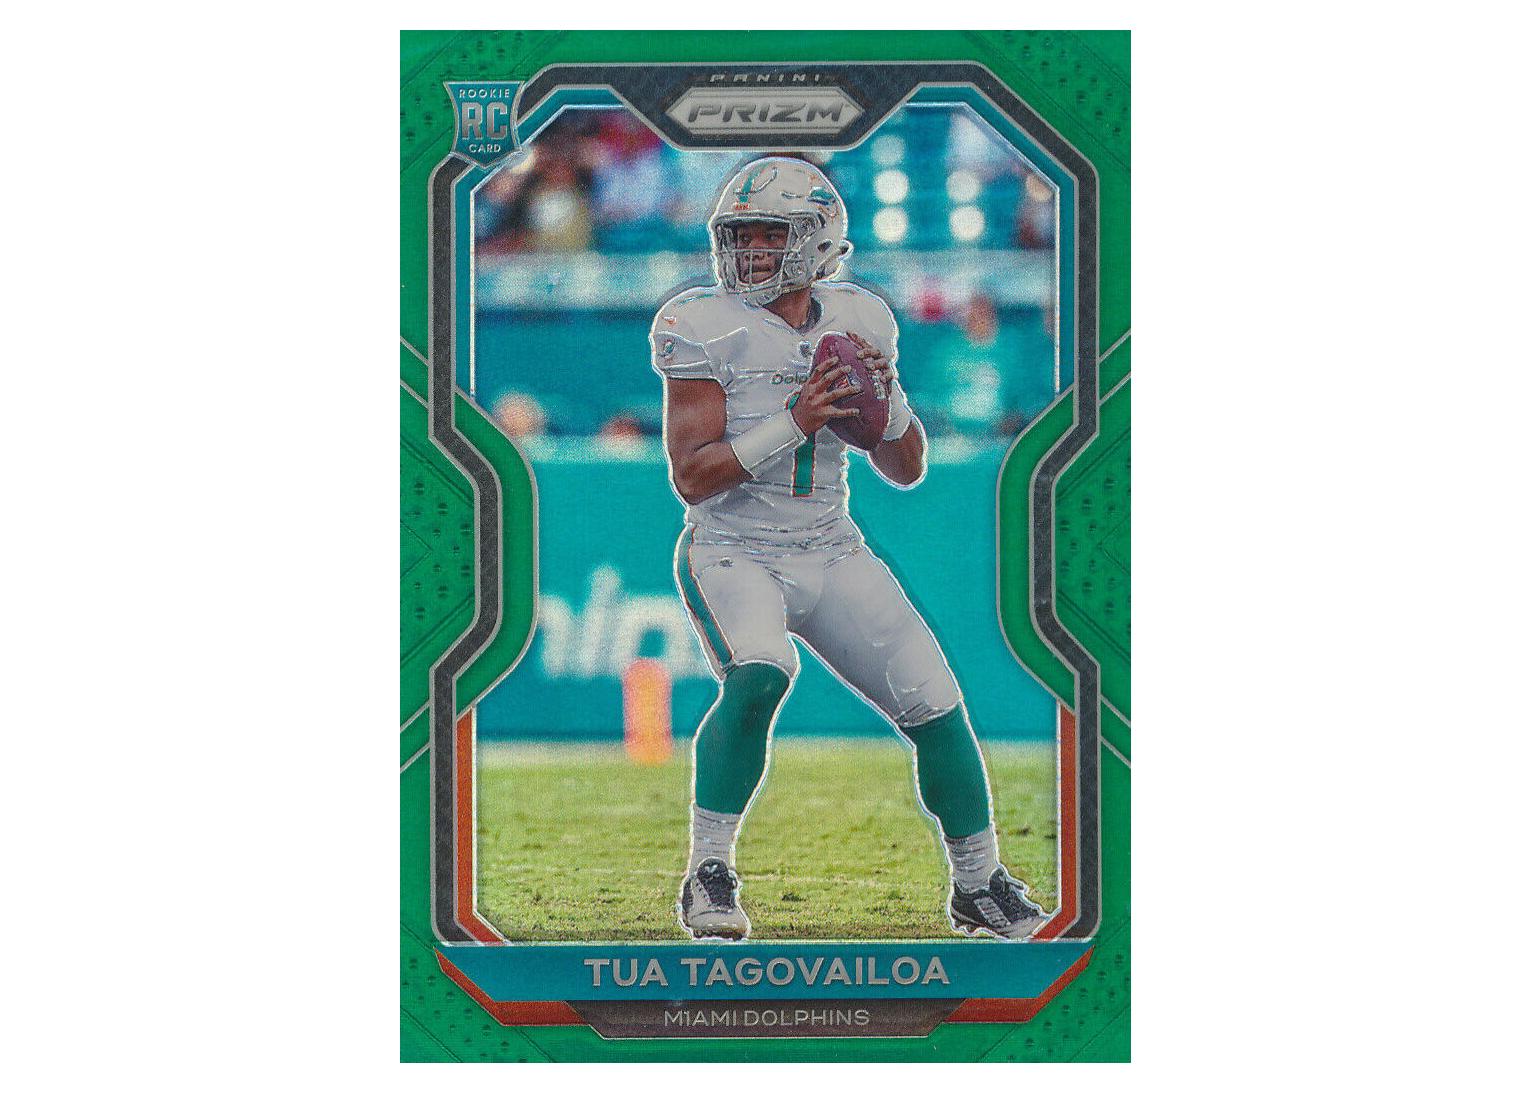 Tua Tagovailoa limited edition jersey